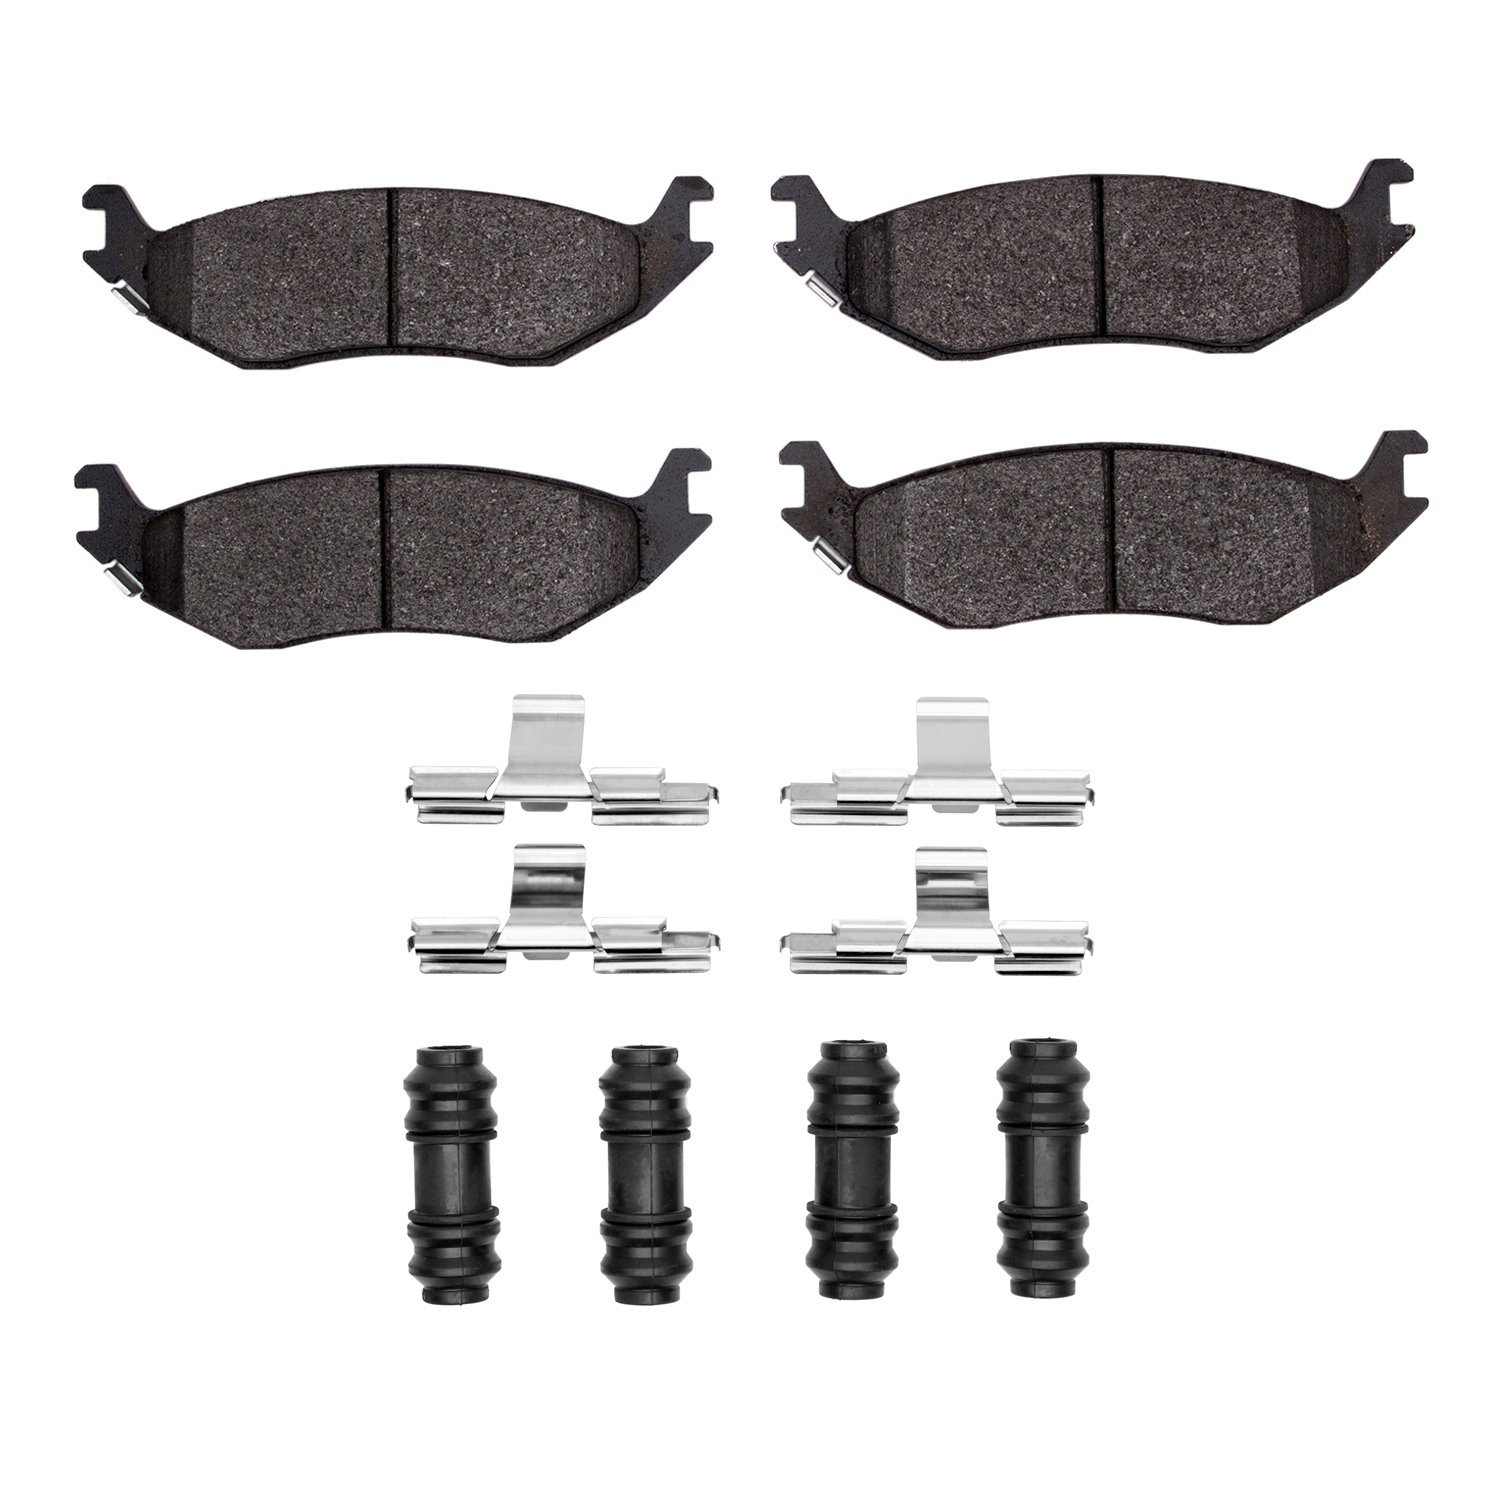 1214-0898-01 Heavy-Duty Brake Pads & Hardware Kit, Fits Select Mopar, Position: Rear